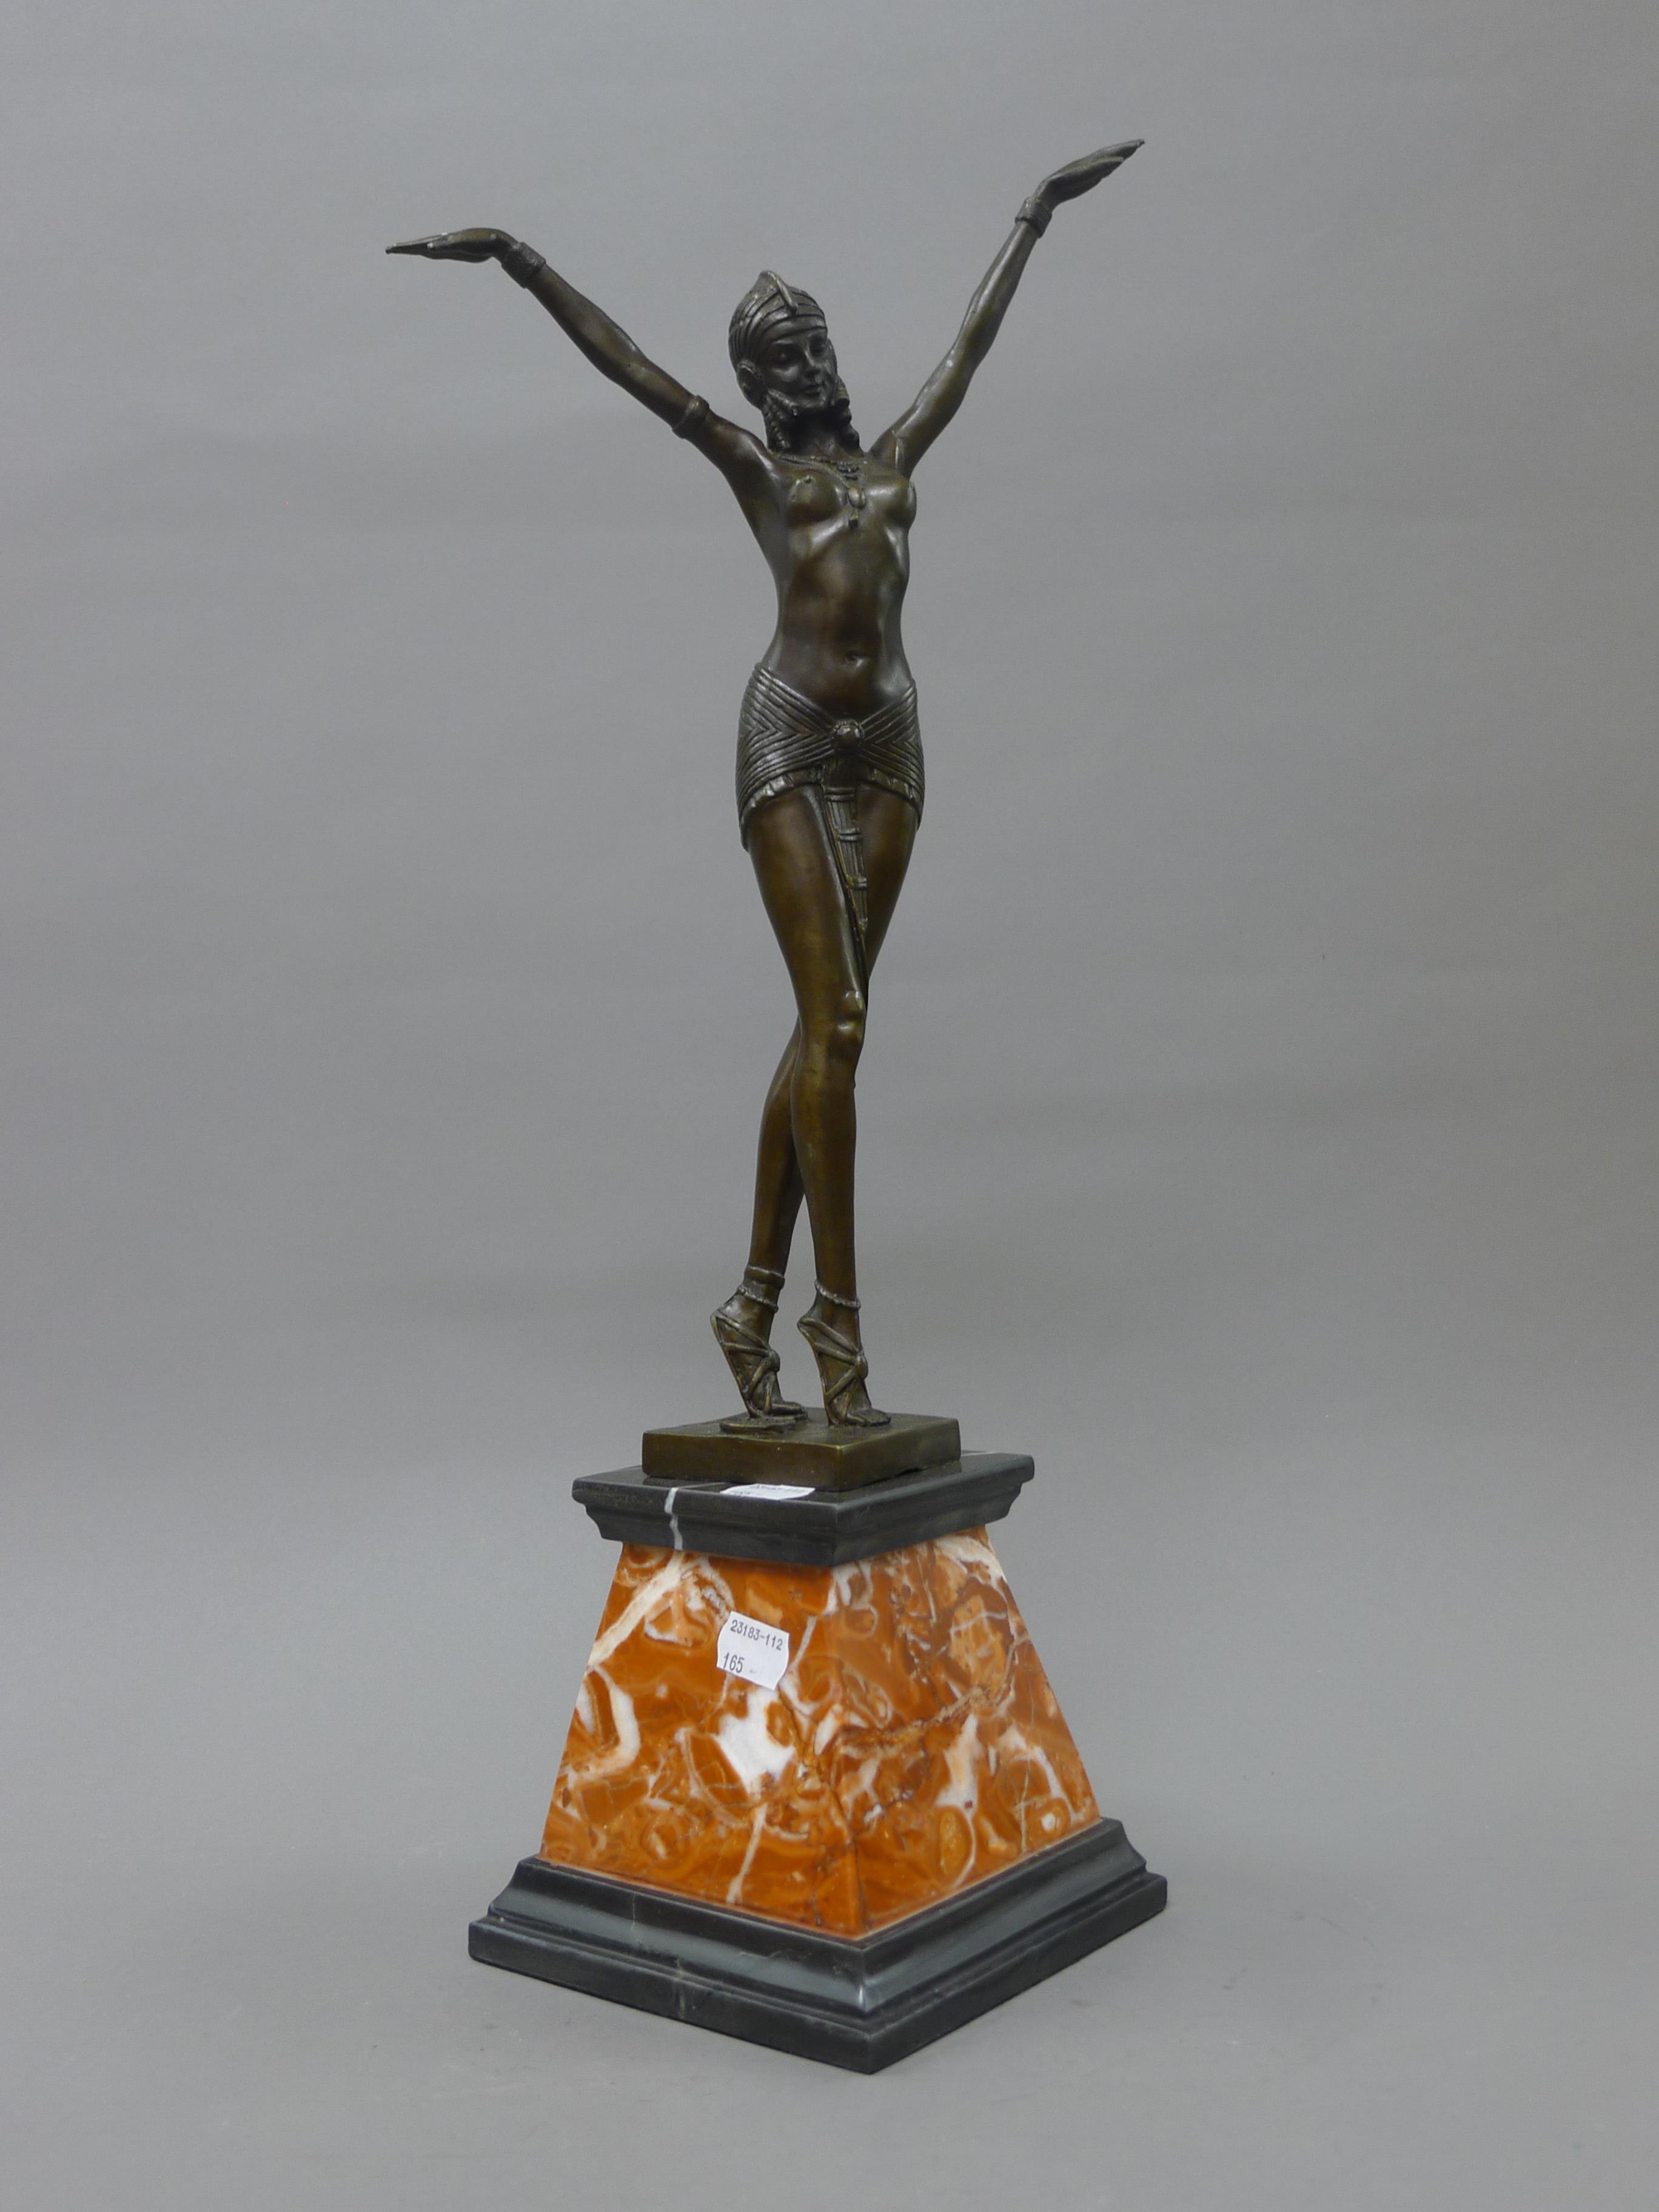 An Art Deco style bronze figure of a girl. 55 cm high.